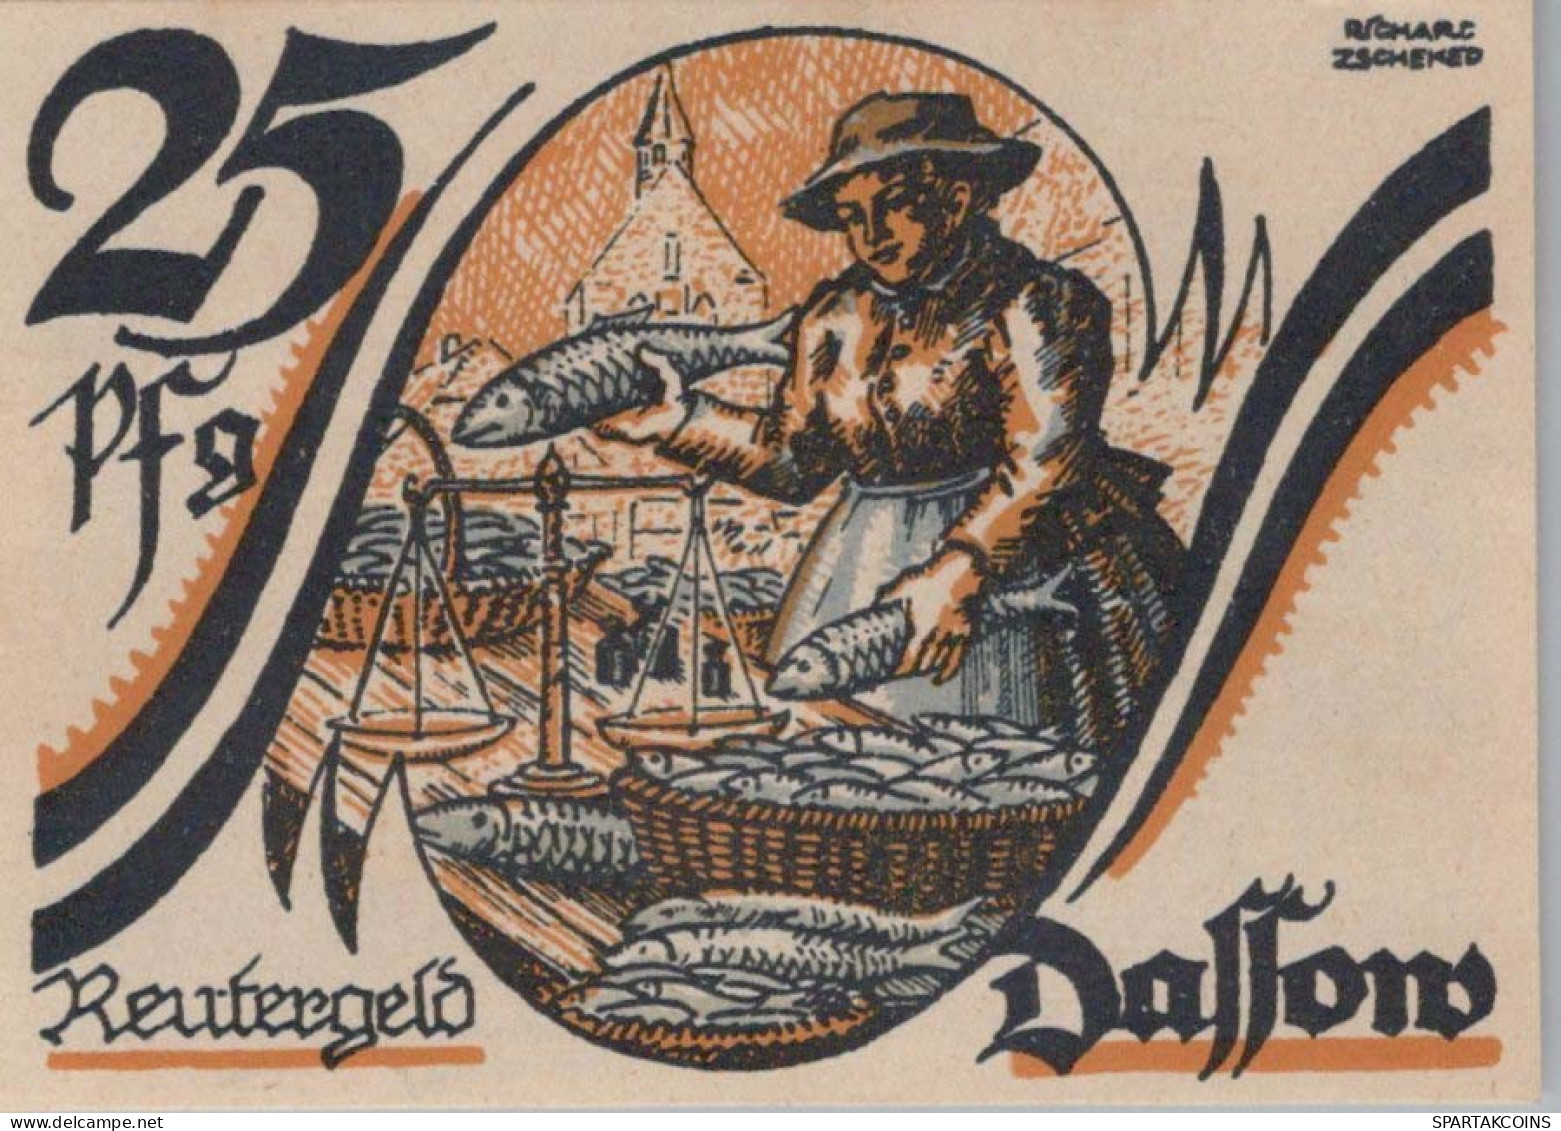 25 PFENNIG 1922 Stadt DASSOW Mecklenburg-Schwerin UNC DEUTSCHLAND Notgeld #PA429 - [11] Local Banknote Issues